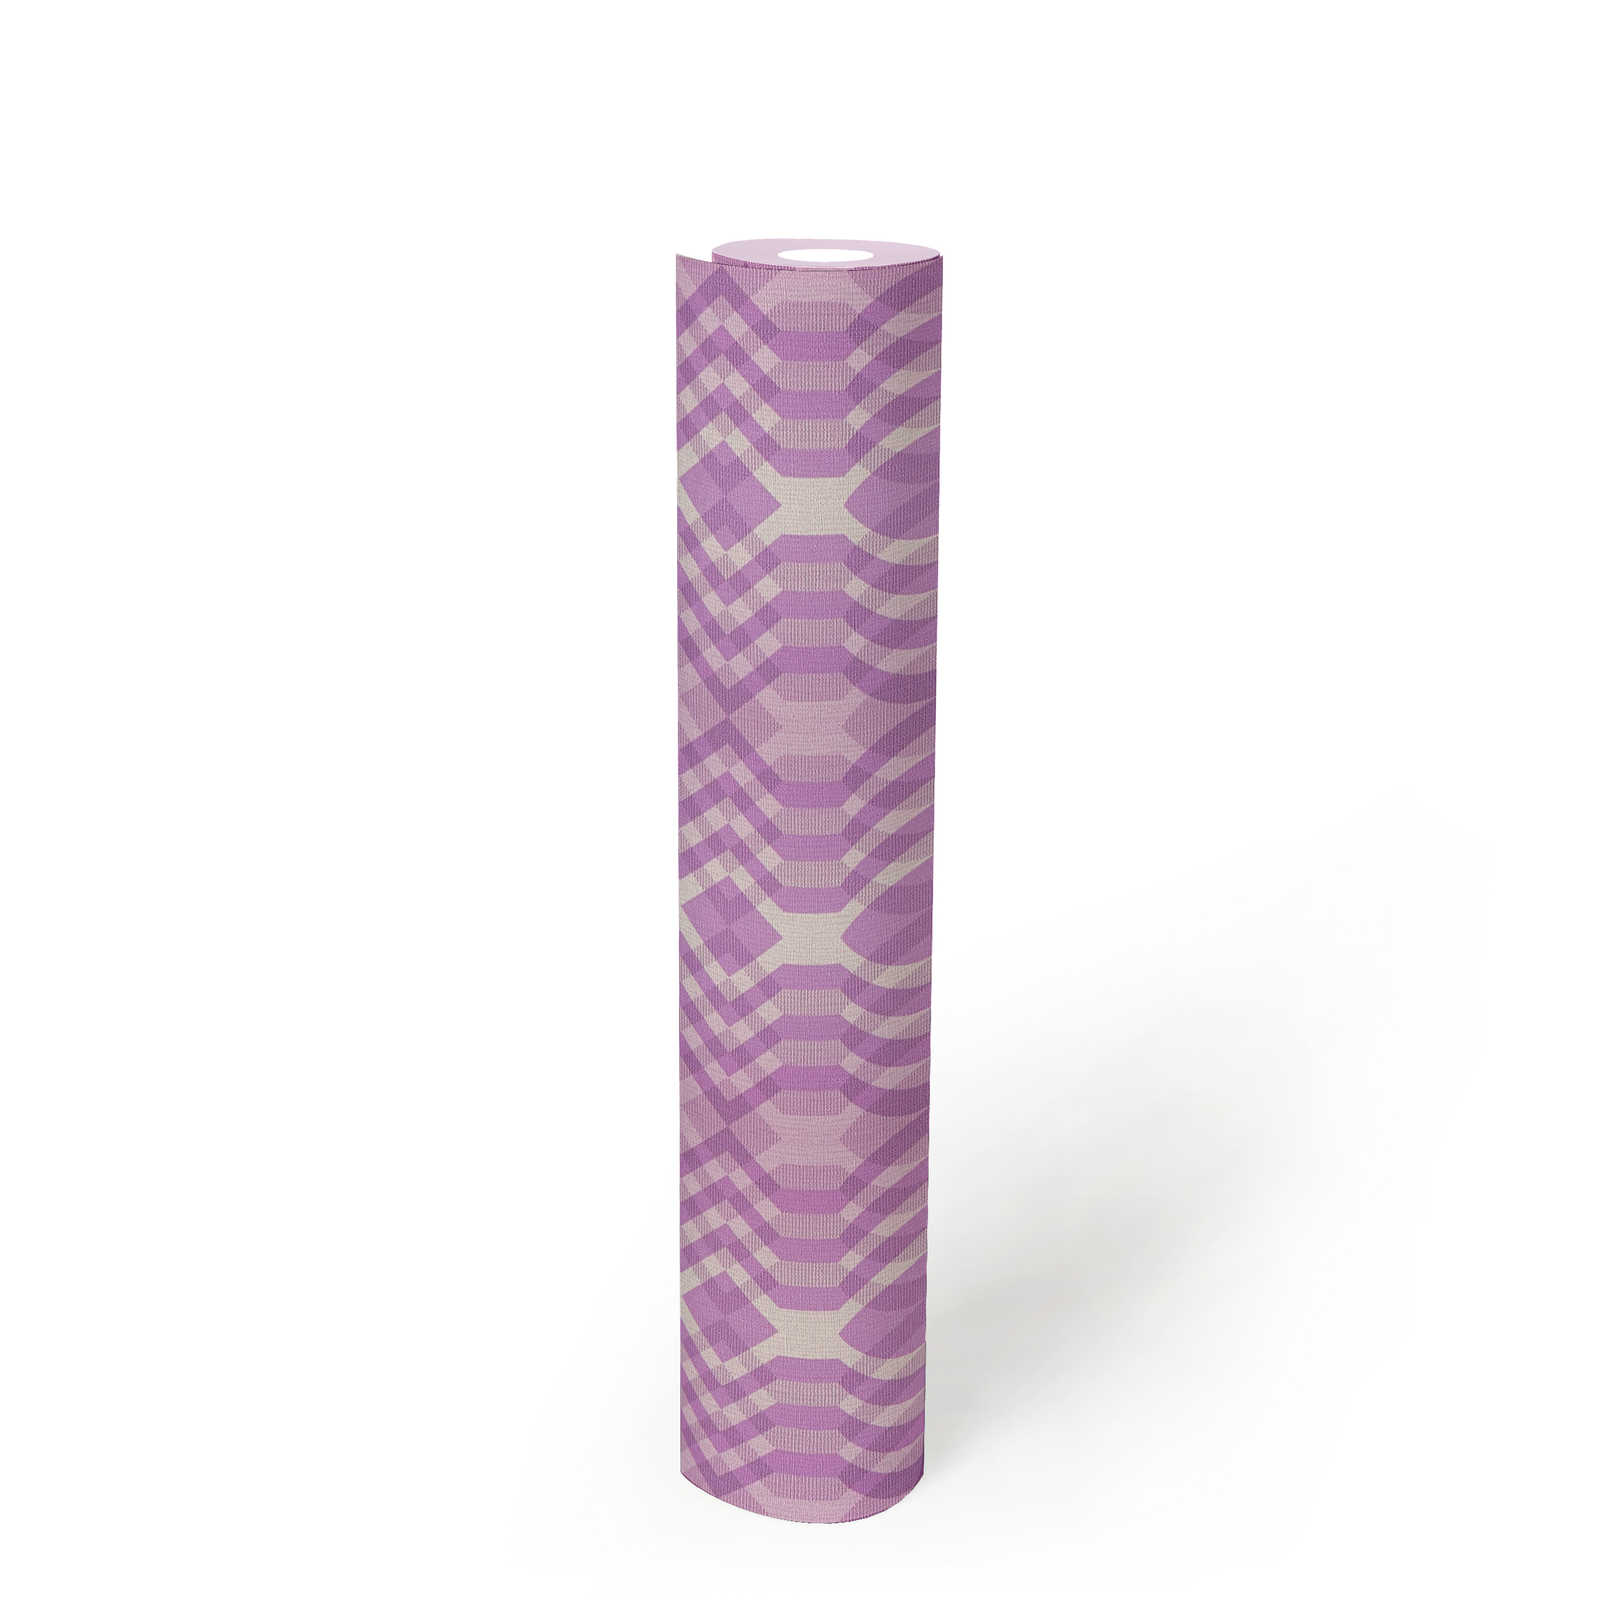             papier peint en papier intissé à motifs géométriques de style rétro - violet, crème, blanc
        